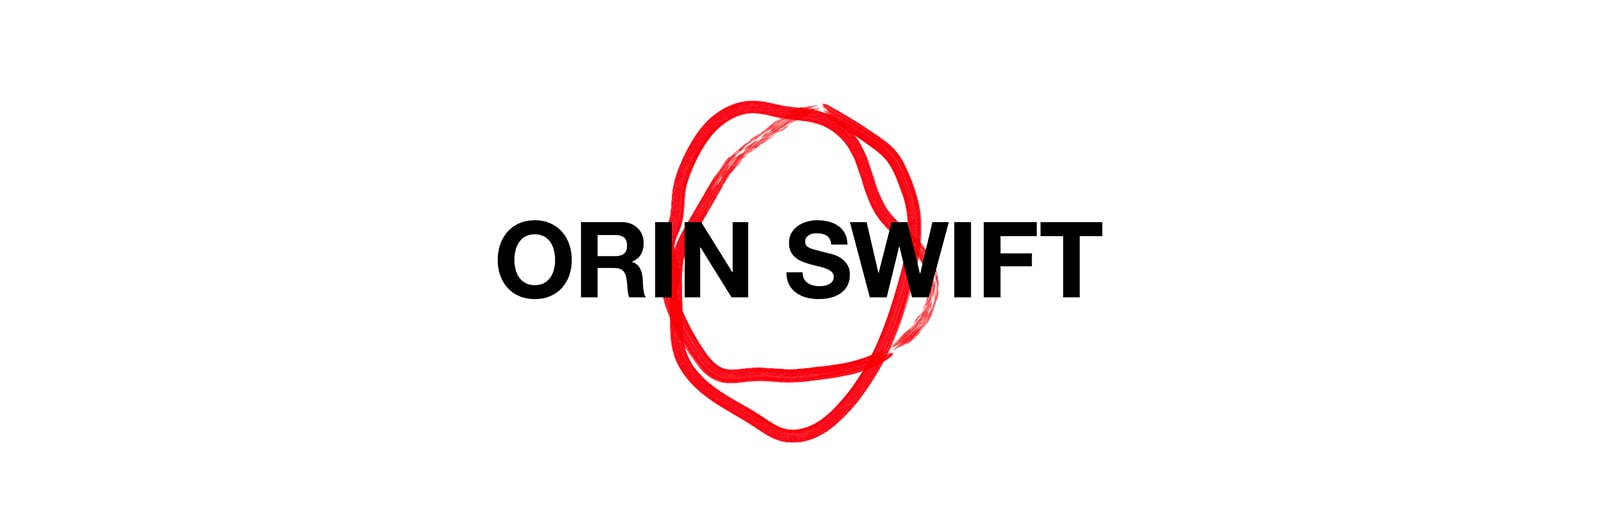 Orin Swift logo